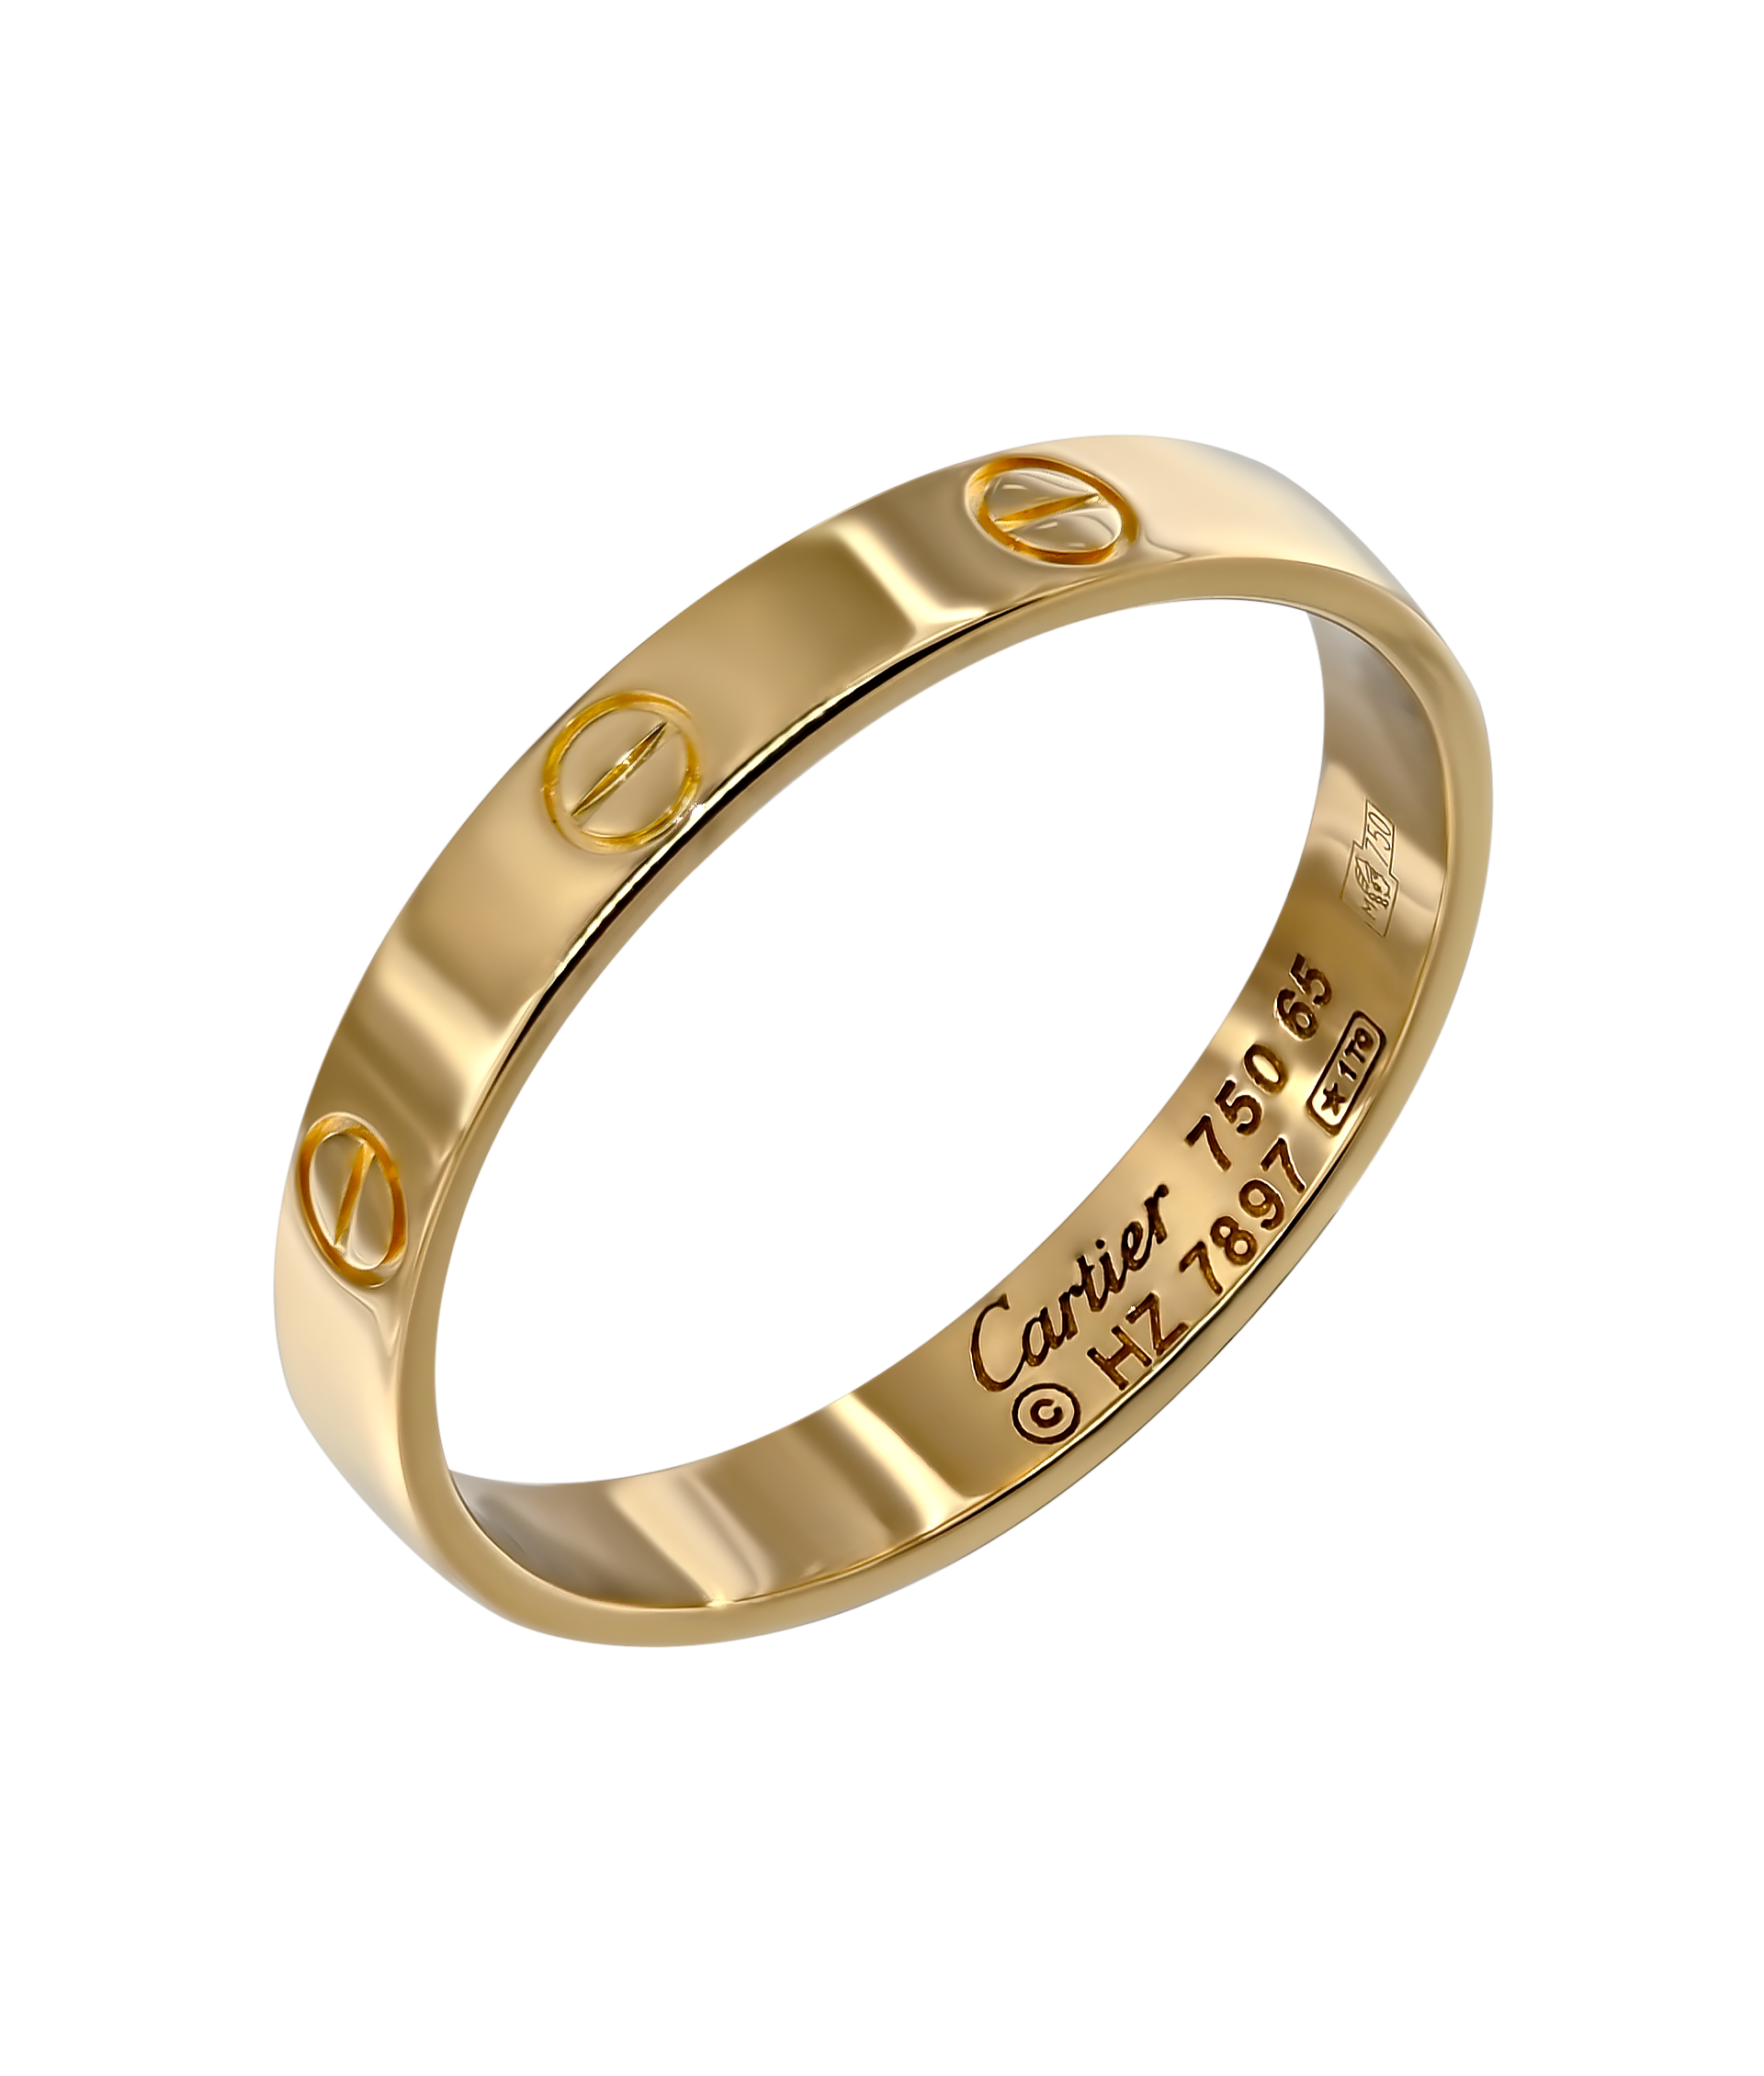 Кольцо Cartier Love из желтого золота 750 пробы 11273 - купить сегодня за30303 руб. Интернет ломбард «Тик – Так» в Москве